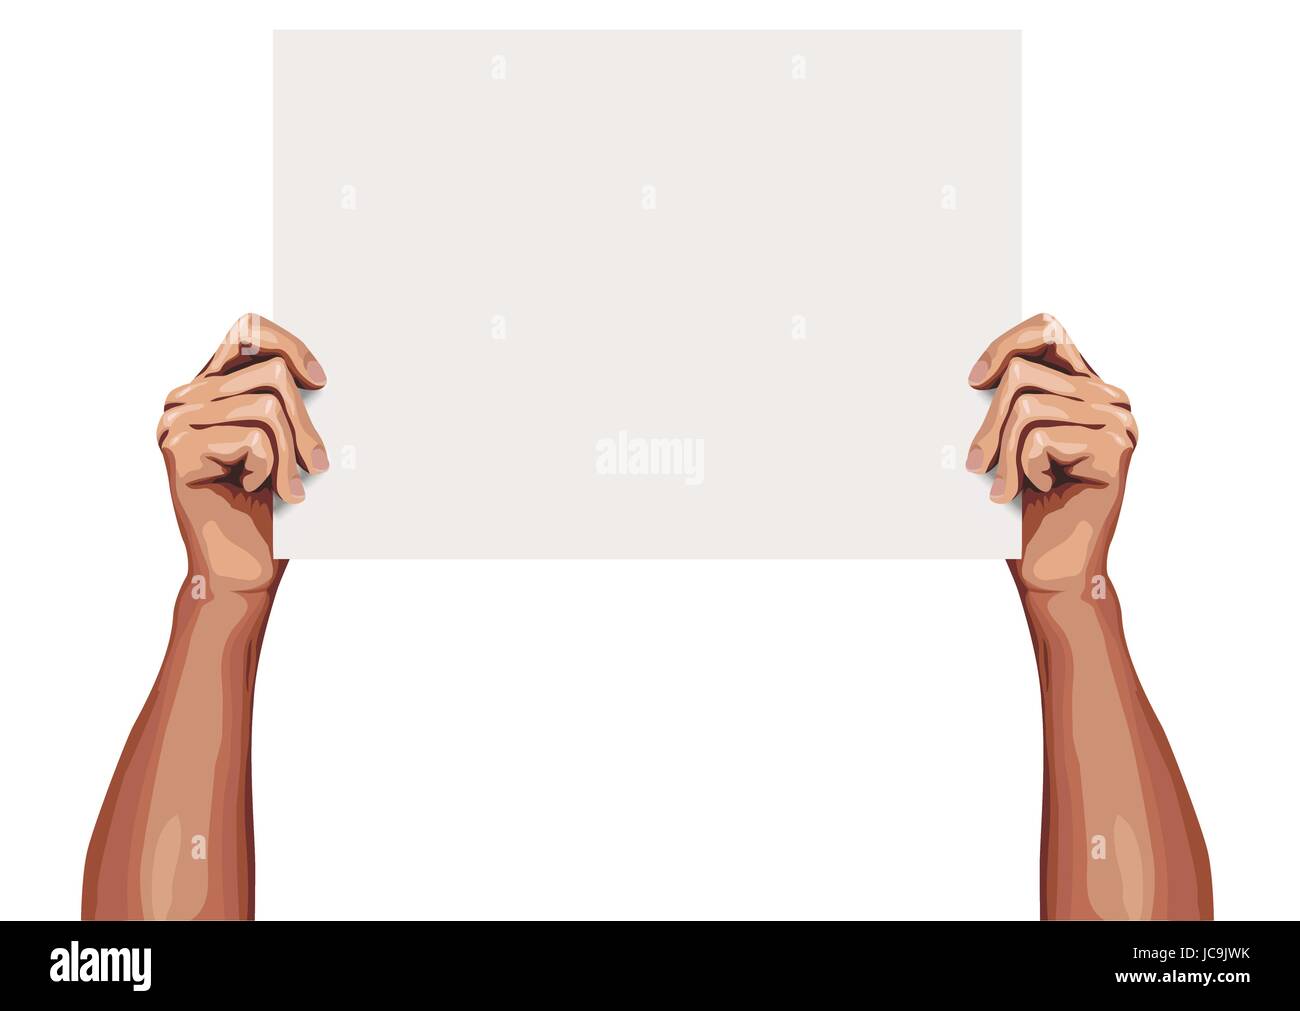 Mann männlichen menschlichen schöne Hände halten Aufbewahrung Verzicht sauber Blankopapier leeren Blatt Stück Zeichen Text Raum zu halten. Vektor-schöne Nahaufnahme front Stock Vektor